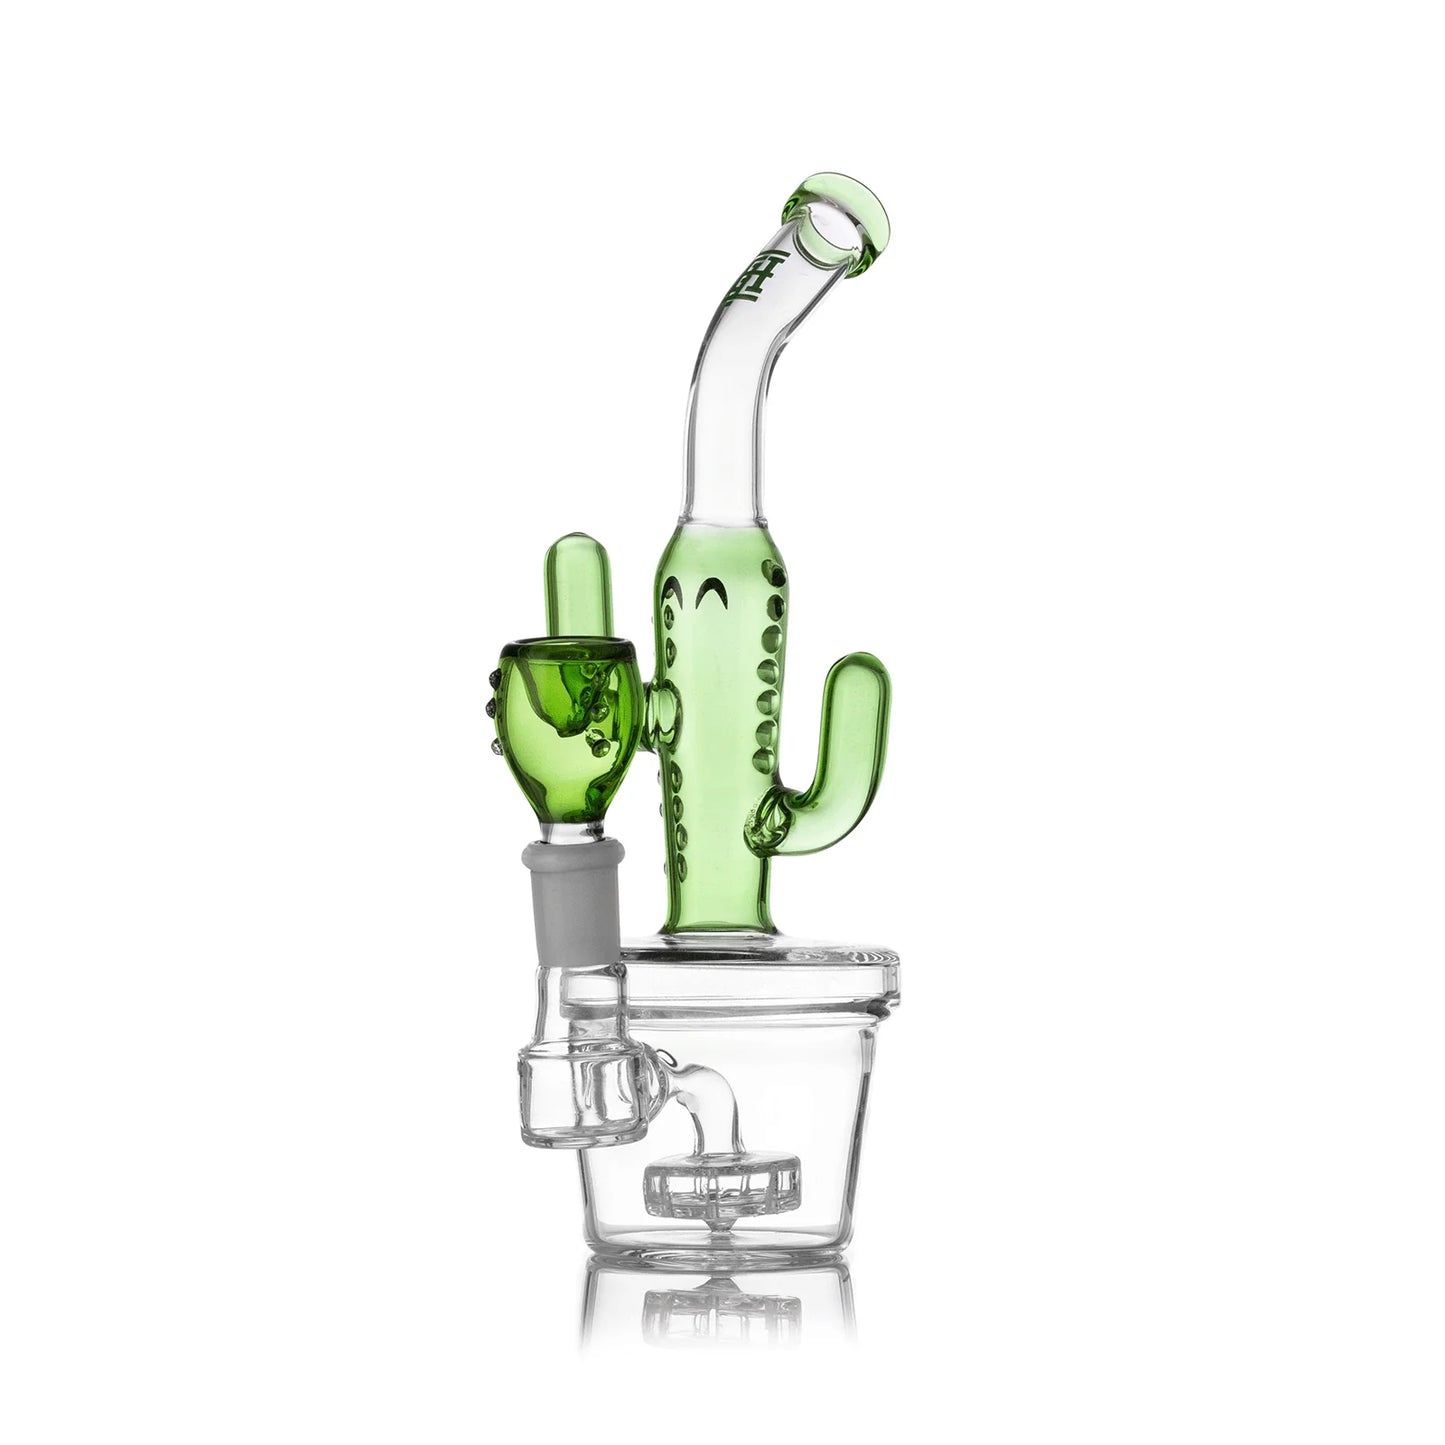 Hemper "Cactus Jack"